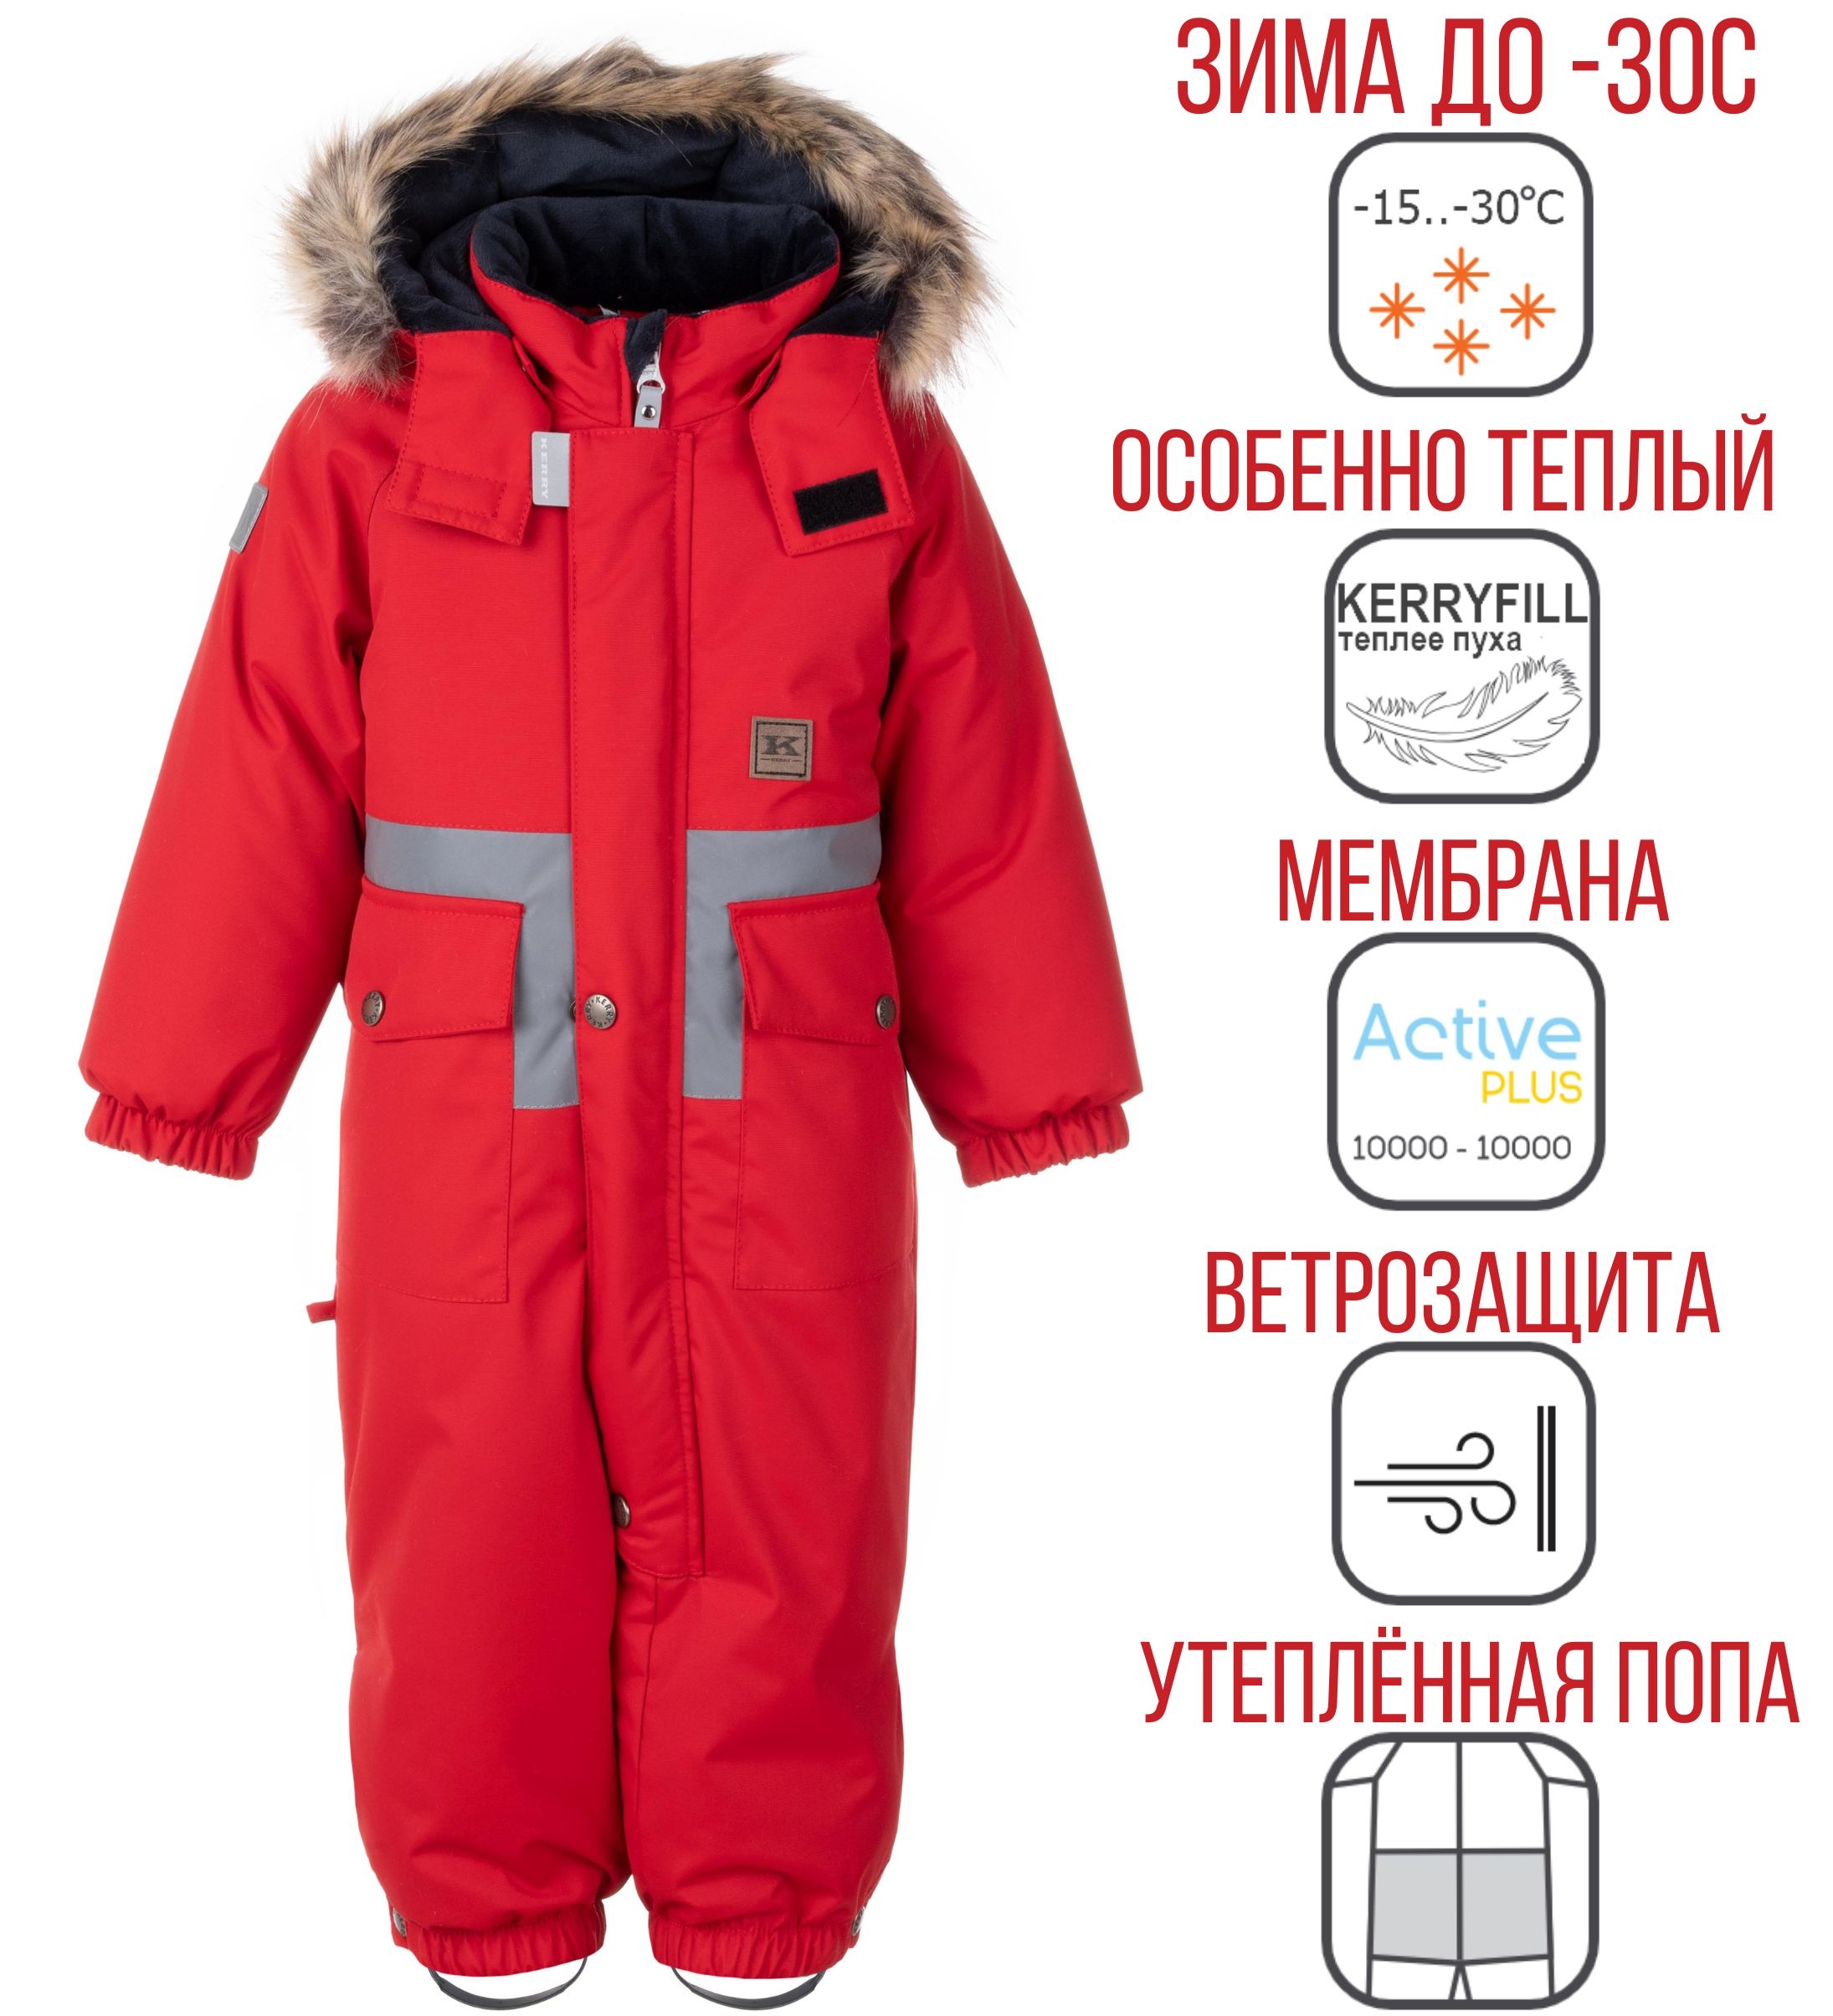 Комбинезон зимний Kerry FLEXI K23408-622 (красный) - купить винтернет-магазине BonKids.ru